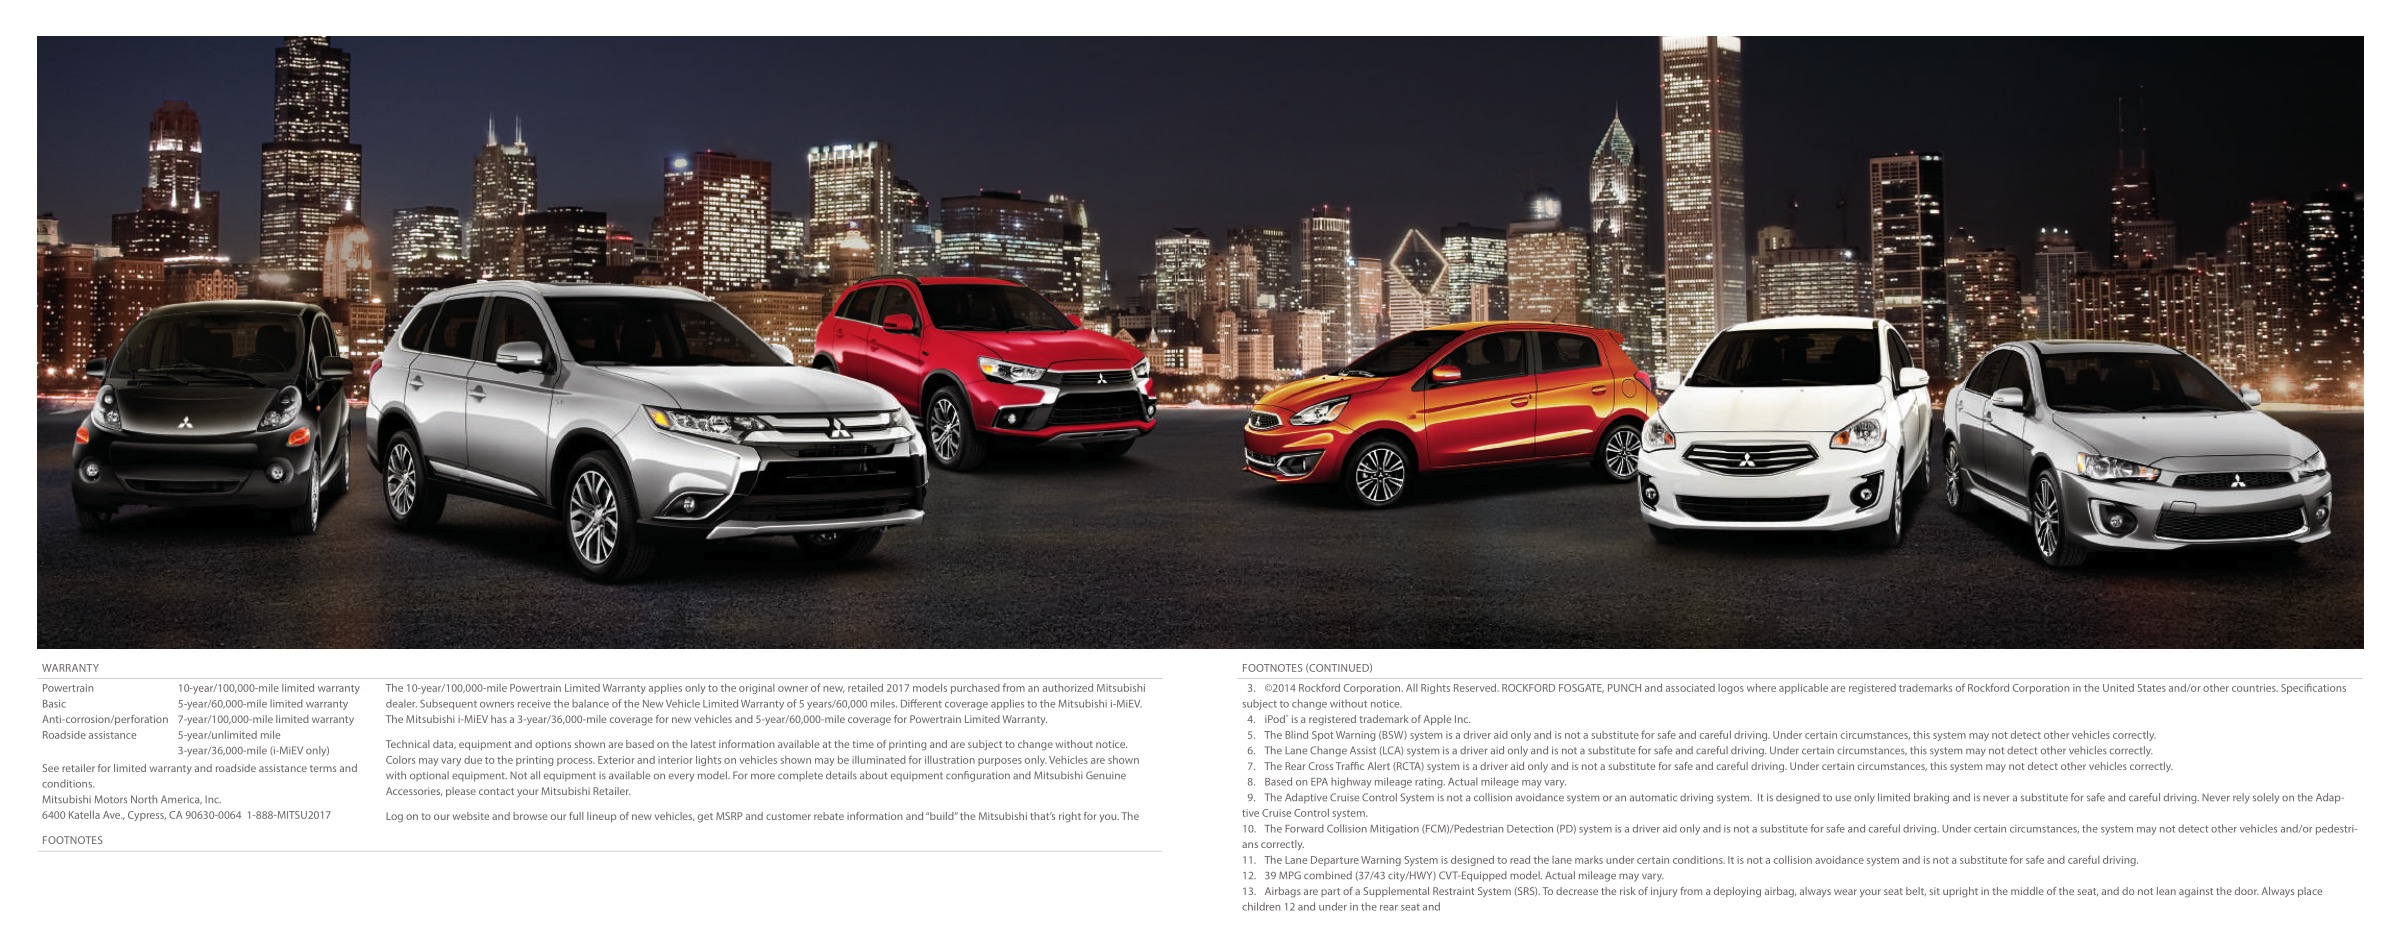 2017 Mitsubishi Full Line Brochure Page 3